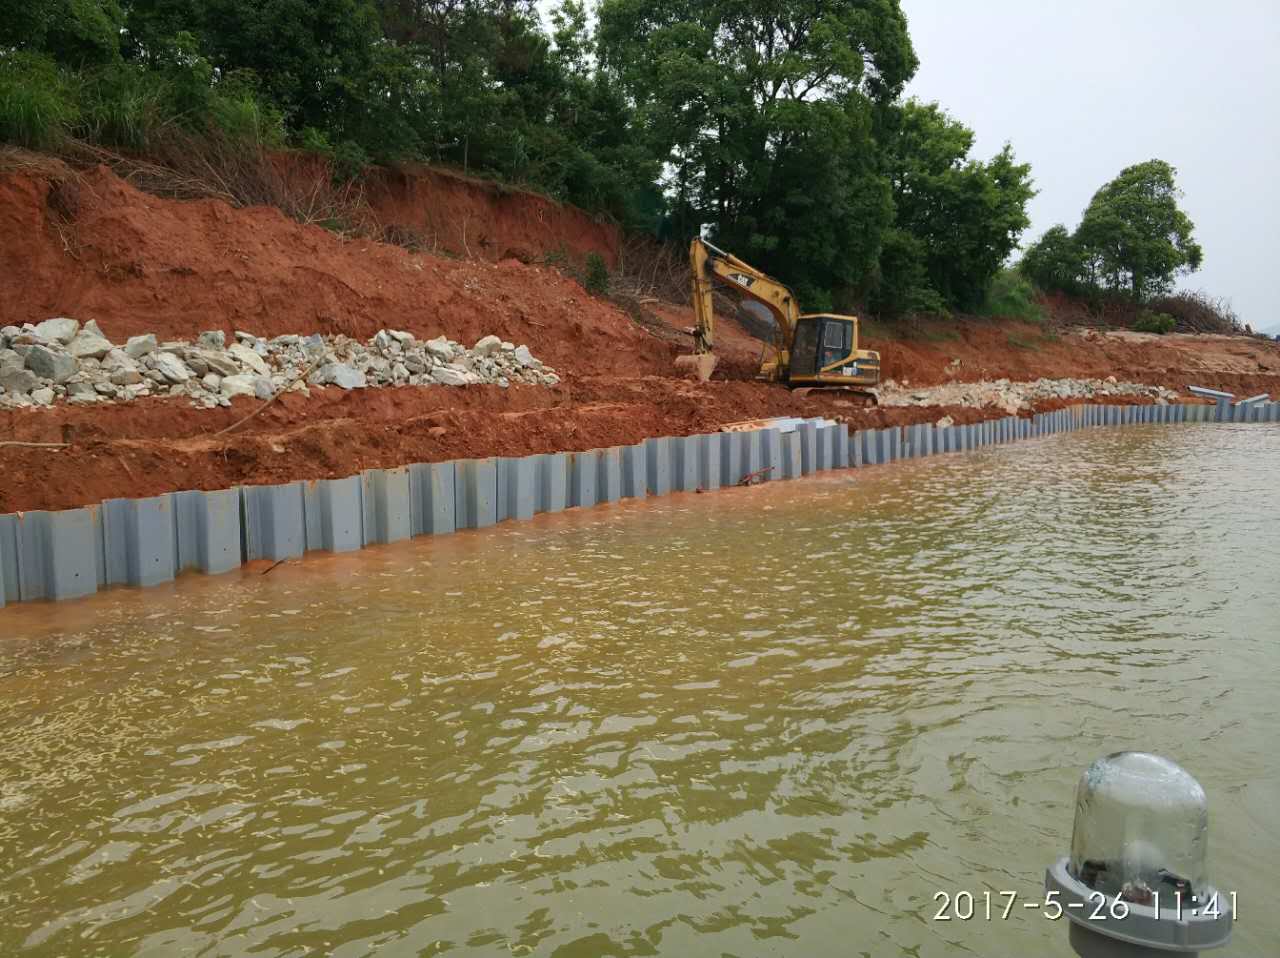 护城塑钢板桩 可应用于河提护岸,管道铺设,道路修建